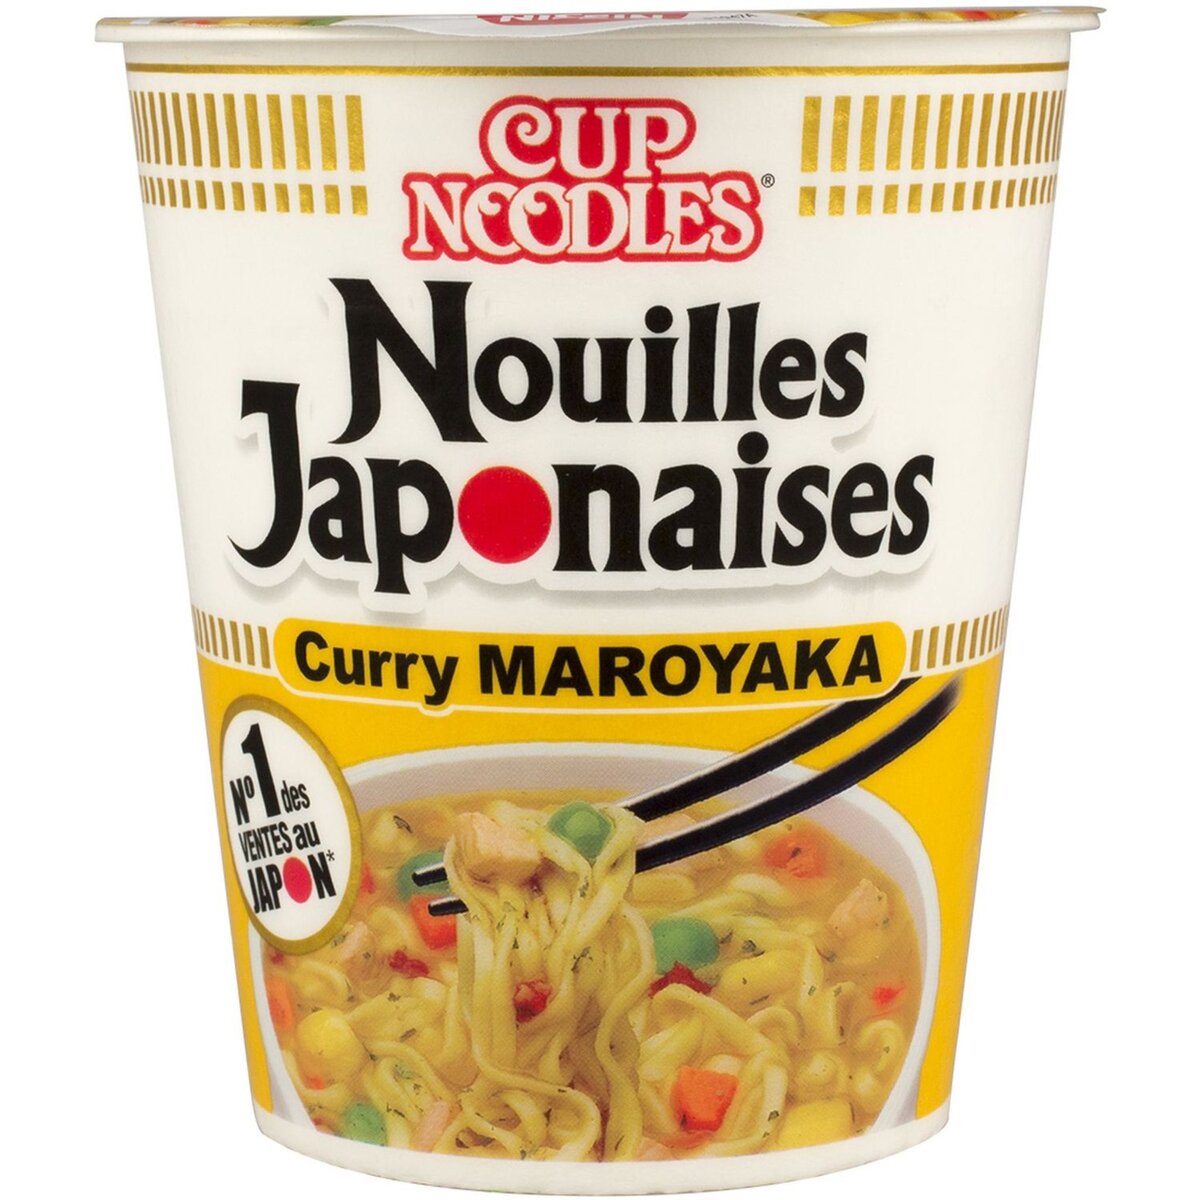 CUP NOODLES Nouilles japonaises au curry maroyaka 67g